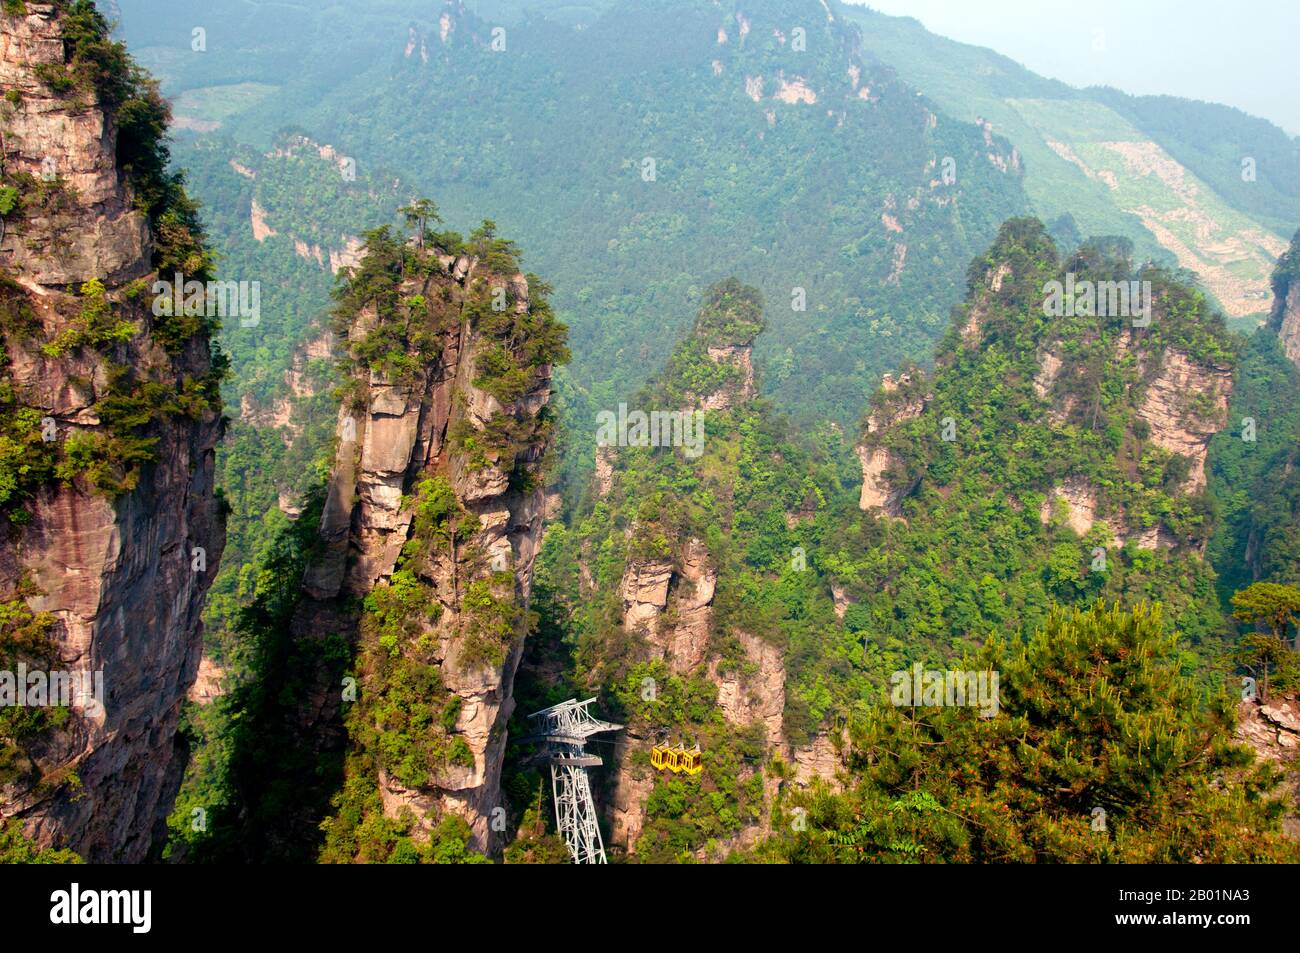 China: Seilbahn, Wulingyuan Scenic Area (Zhangjiajie), Provinz Hunan. Das Wulingyuan Scenic Reserve ist ein landschaftlich interessantes Gebiet in der Provinz Hunan. Er ist bekannt für seine etwa 3.100 hohen Quarzitsandsteinsäulen, von denen einige über 800 Meter (2.600 ft) hoch sind und eine Art Karstformation sind. 1992 wurde es zum UNESCO-Weltkulturerbe erklärt. Stockfoto